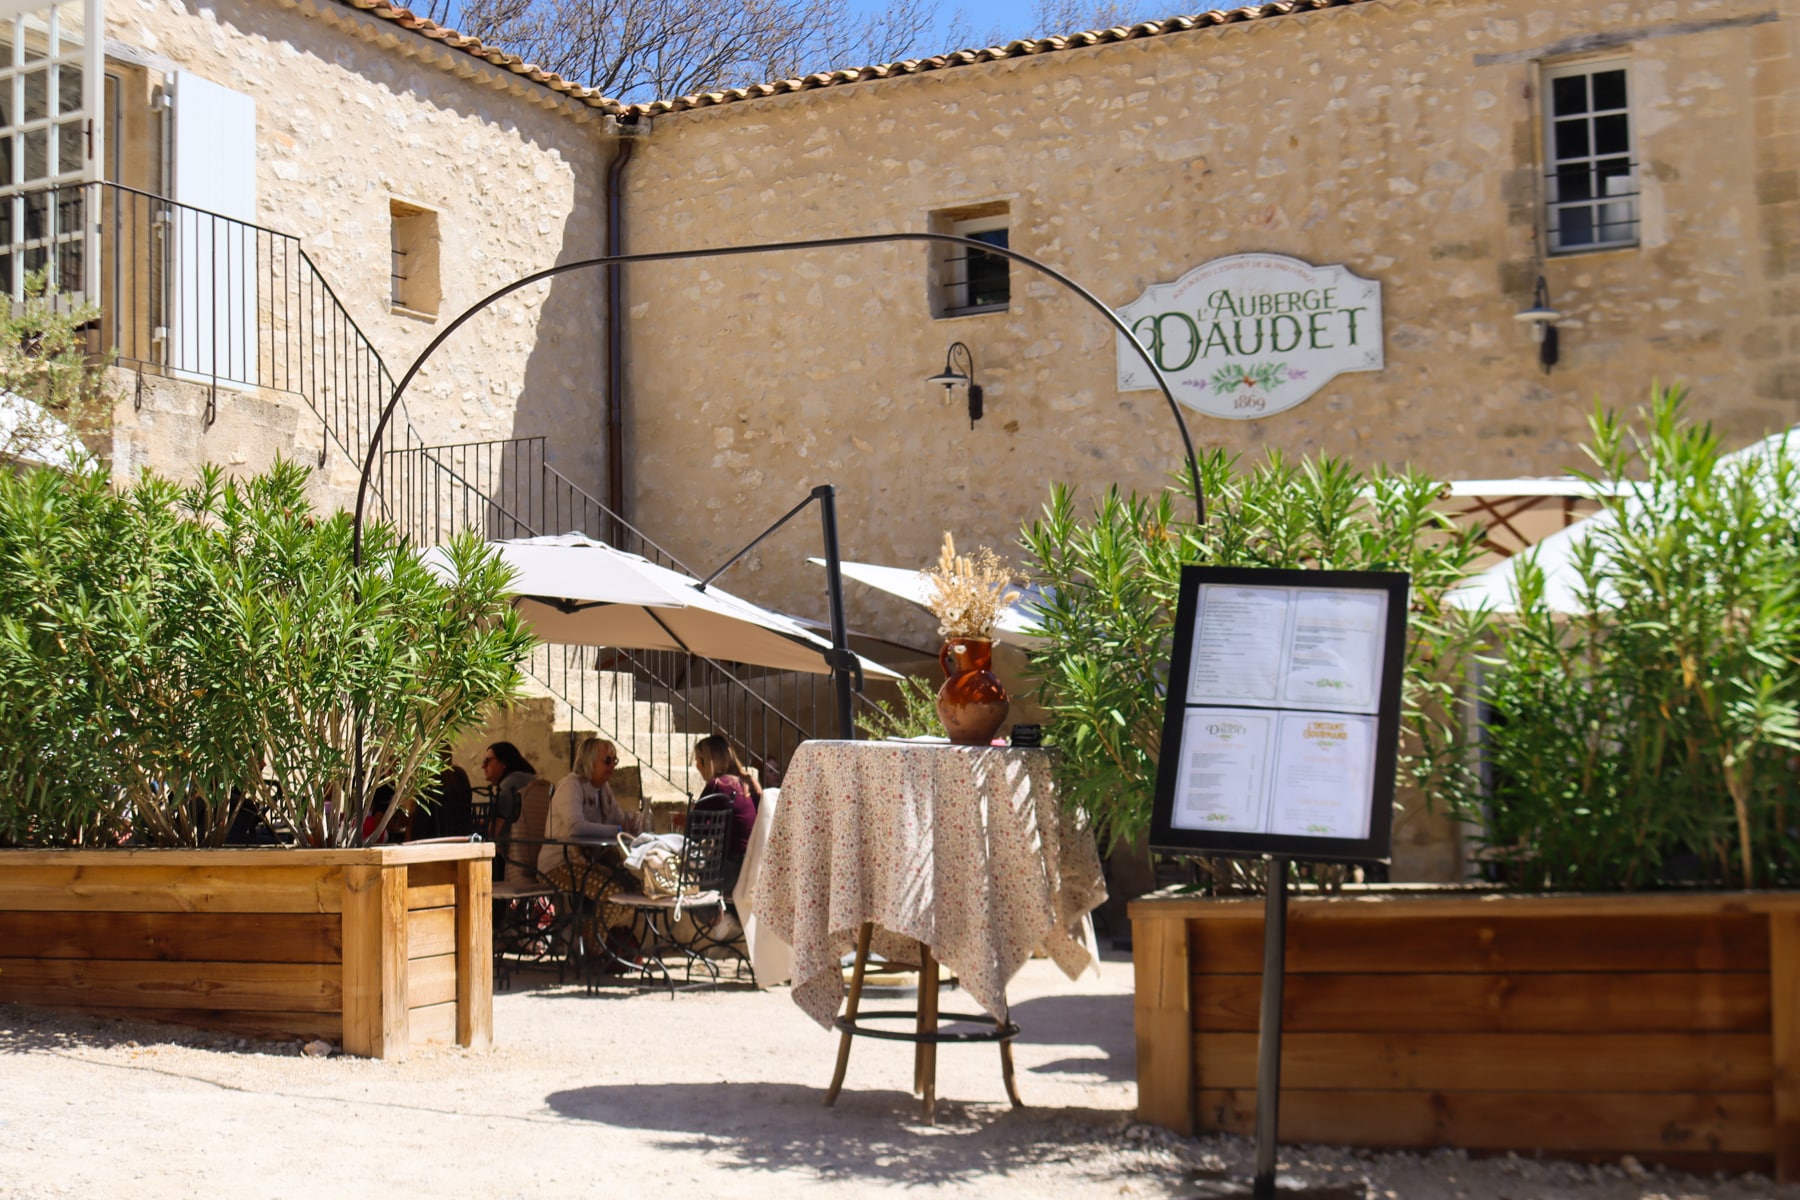 Auberge Daudet, le restaurant du parc Rocher Mistral avec sa cuisine provençale